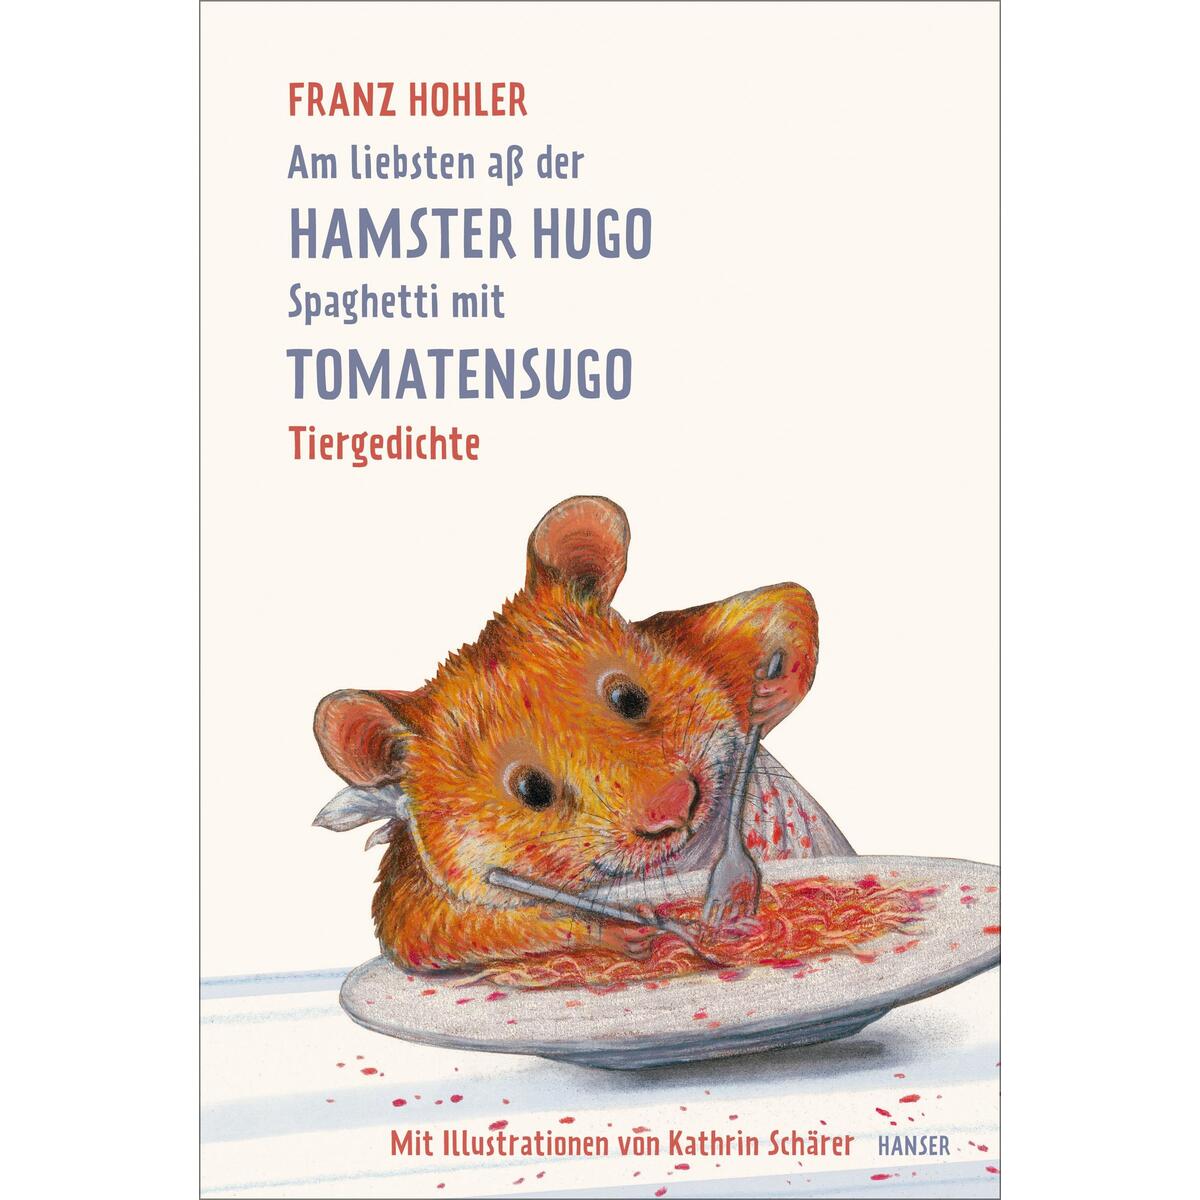 Am liebsten aß der Hamster Hugo Spaghetti mit Tomatensugo von Carl Hanser Verlag